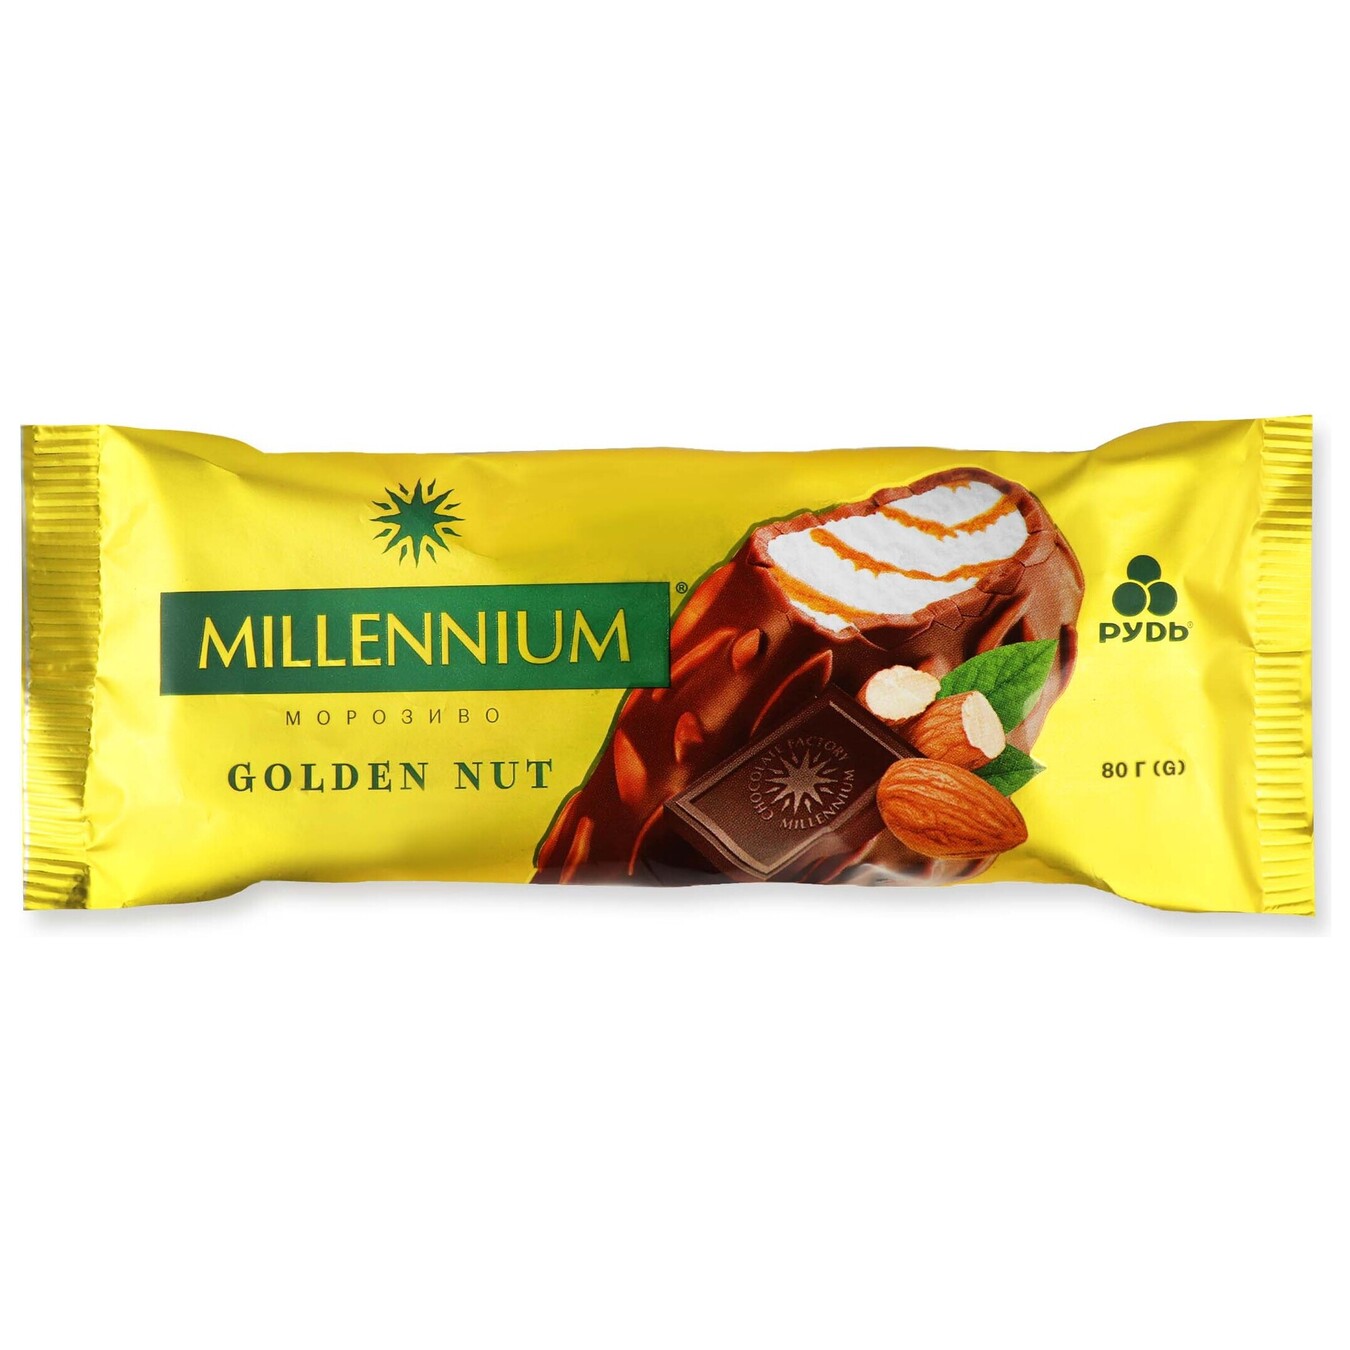 Морозиво Millennium Golden Nut 80г